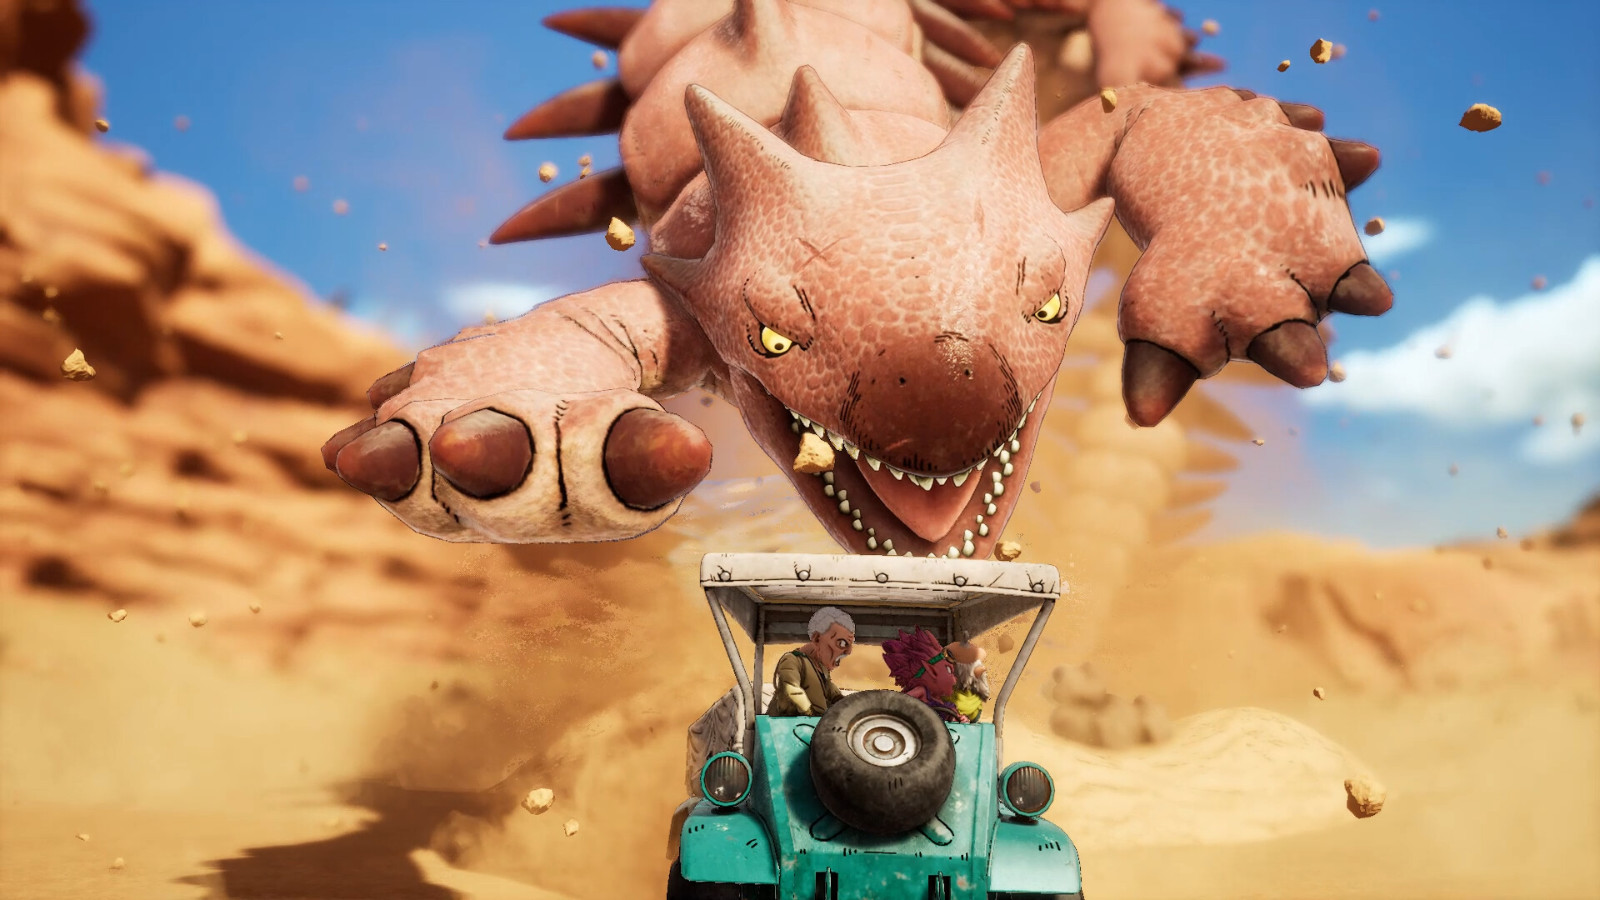 「鸟山明」同名作品改编游戏《沙漠大冒险》公布 登陆全平台